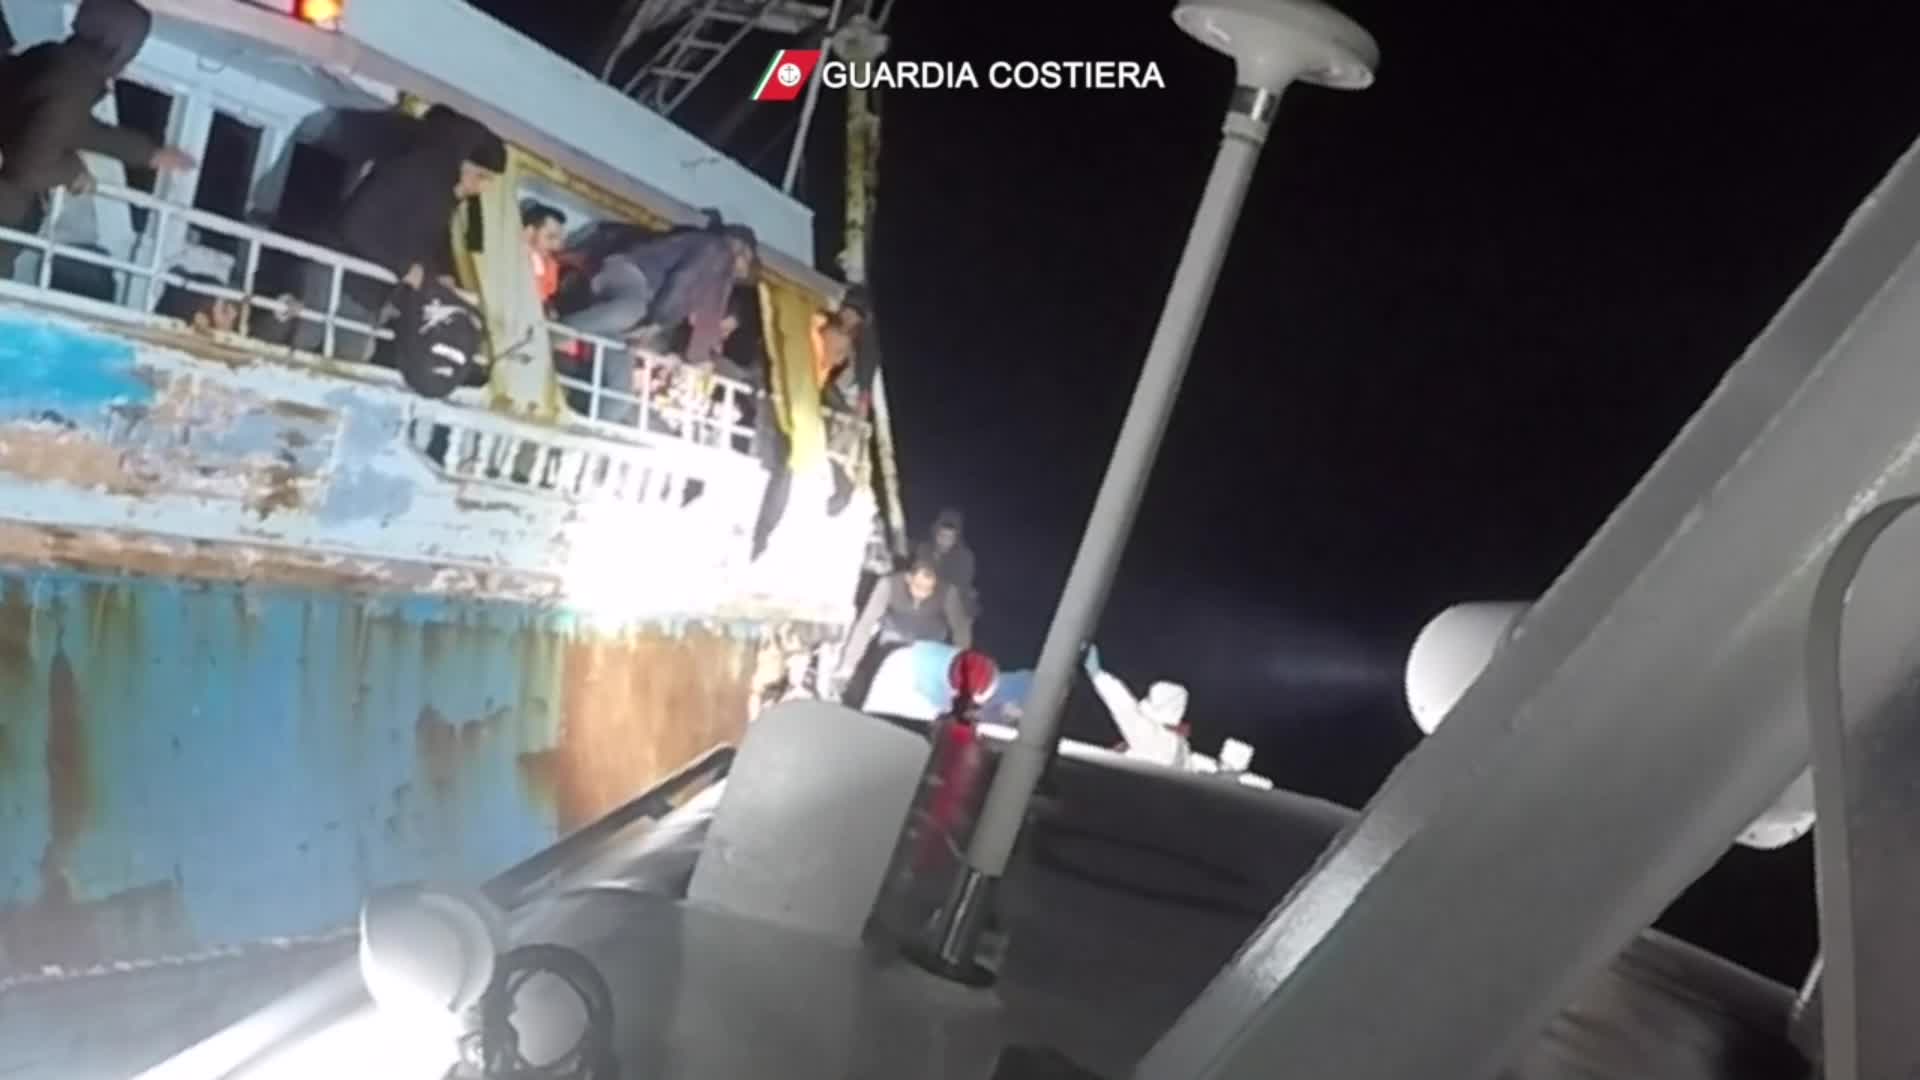 la guardia costiera in soccorso di due navi di migranti